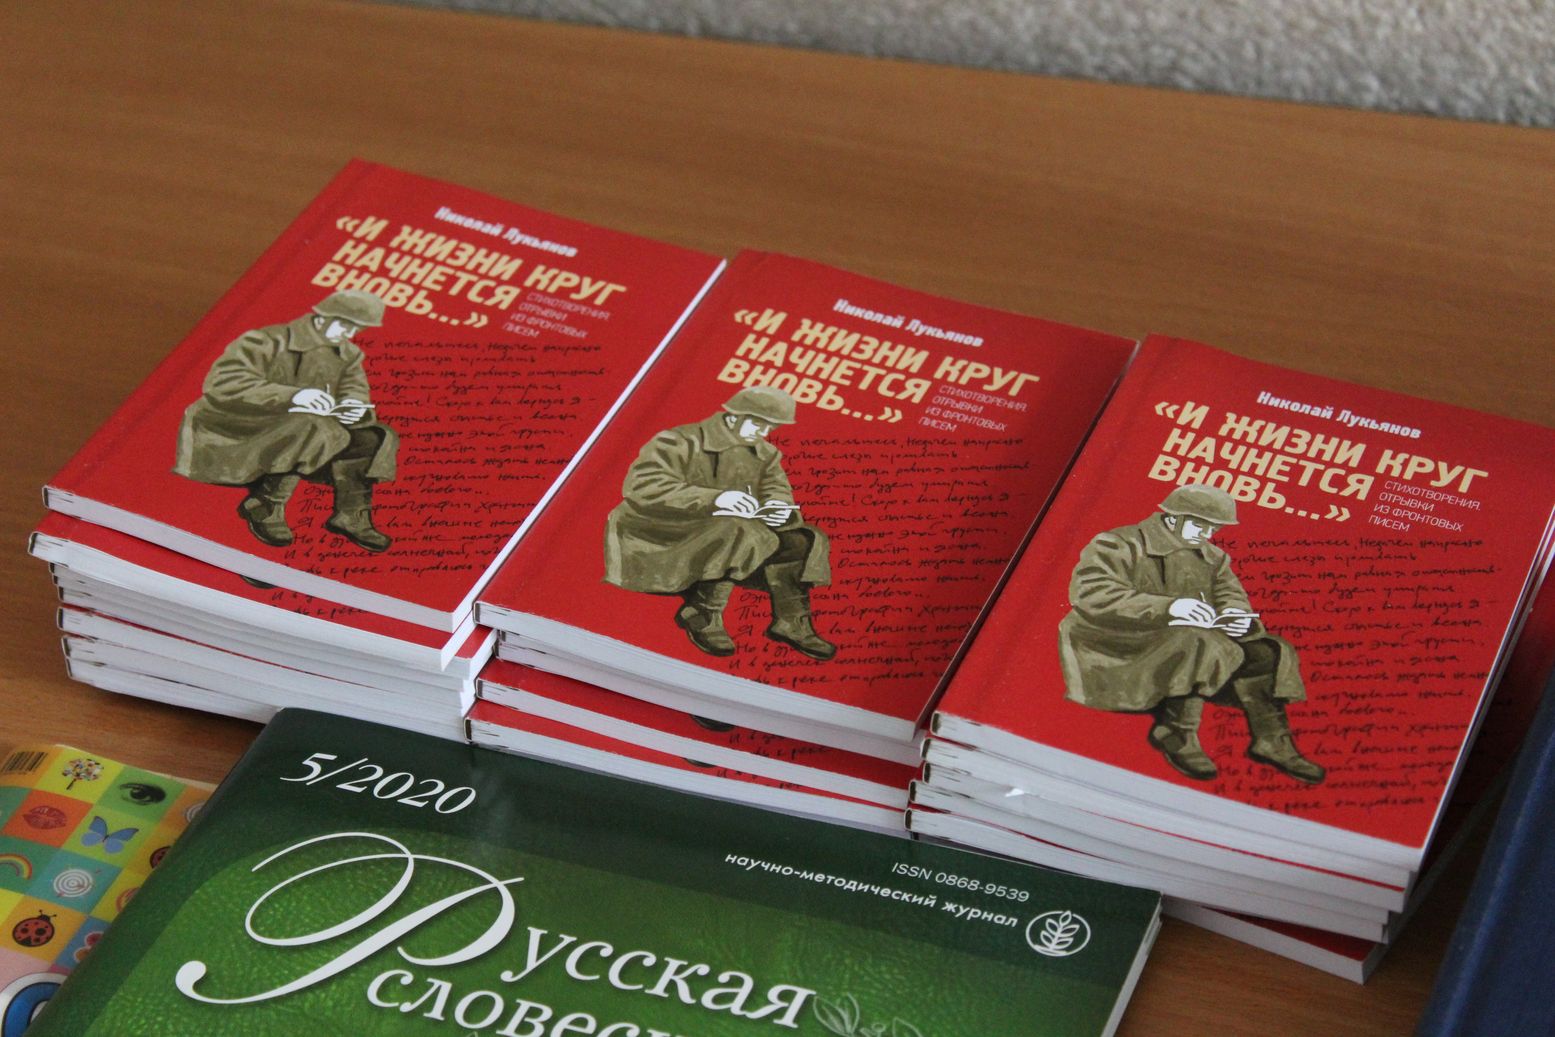 Книга Николая Лукьянова "И жизни круг начнется вновь"